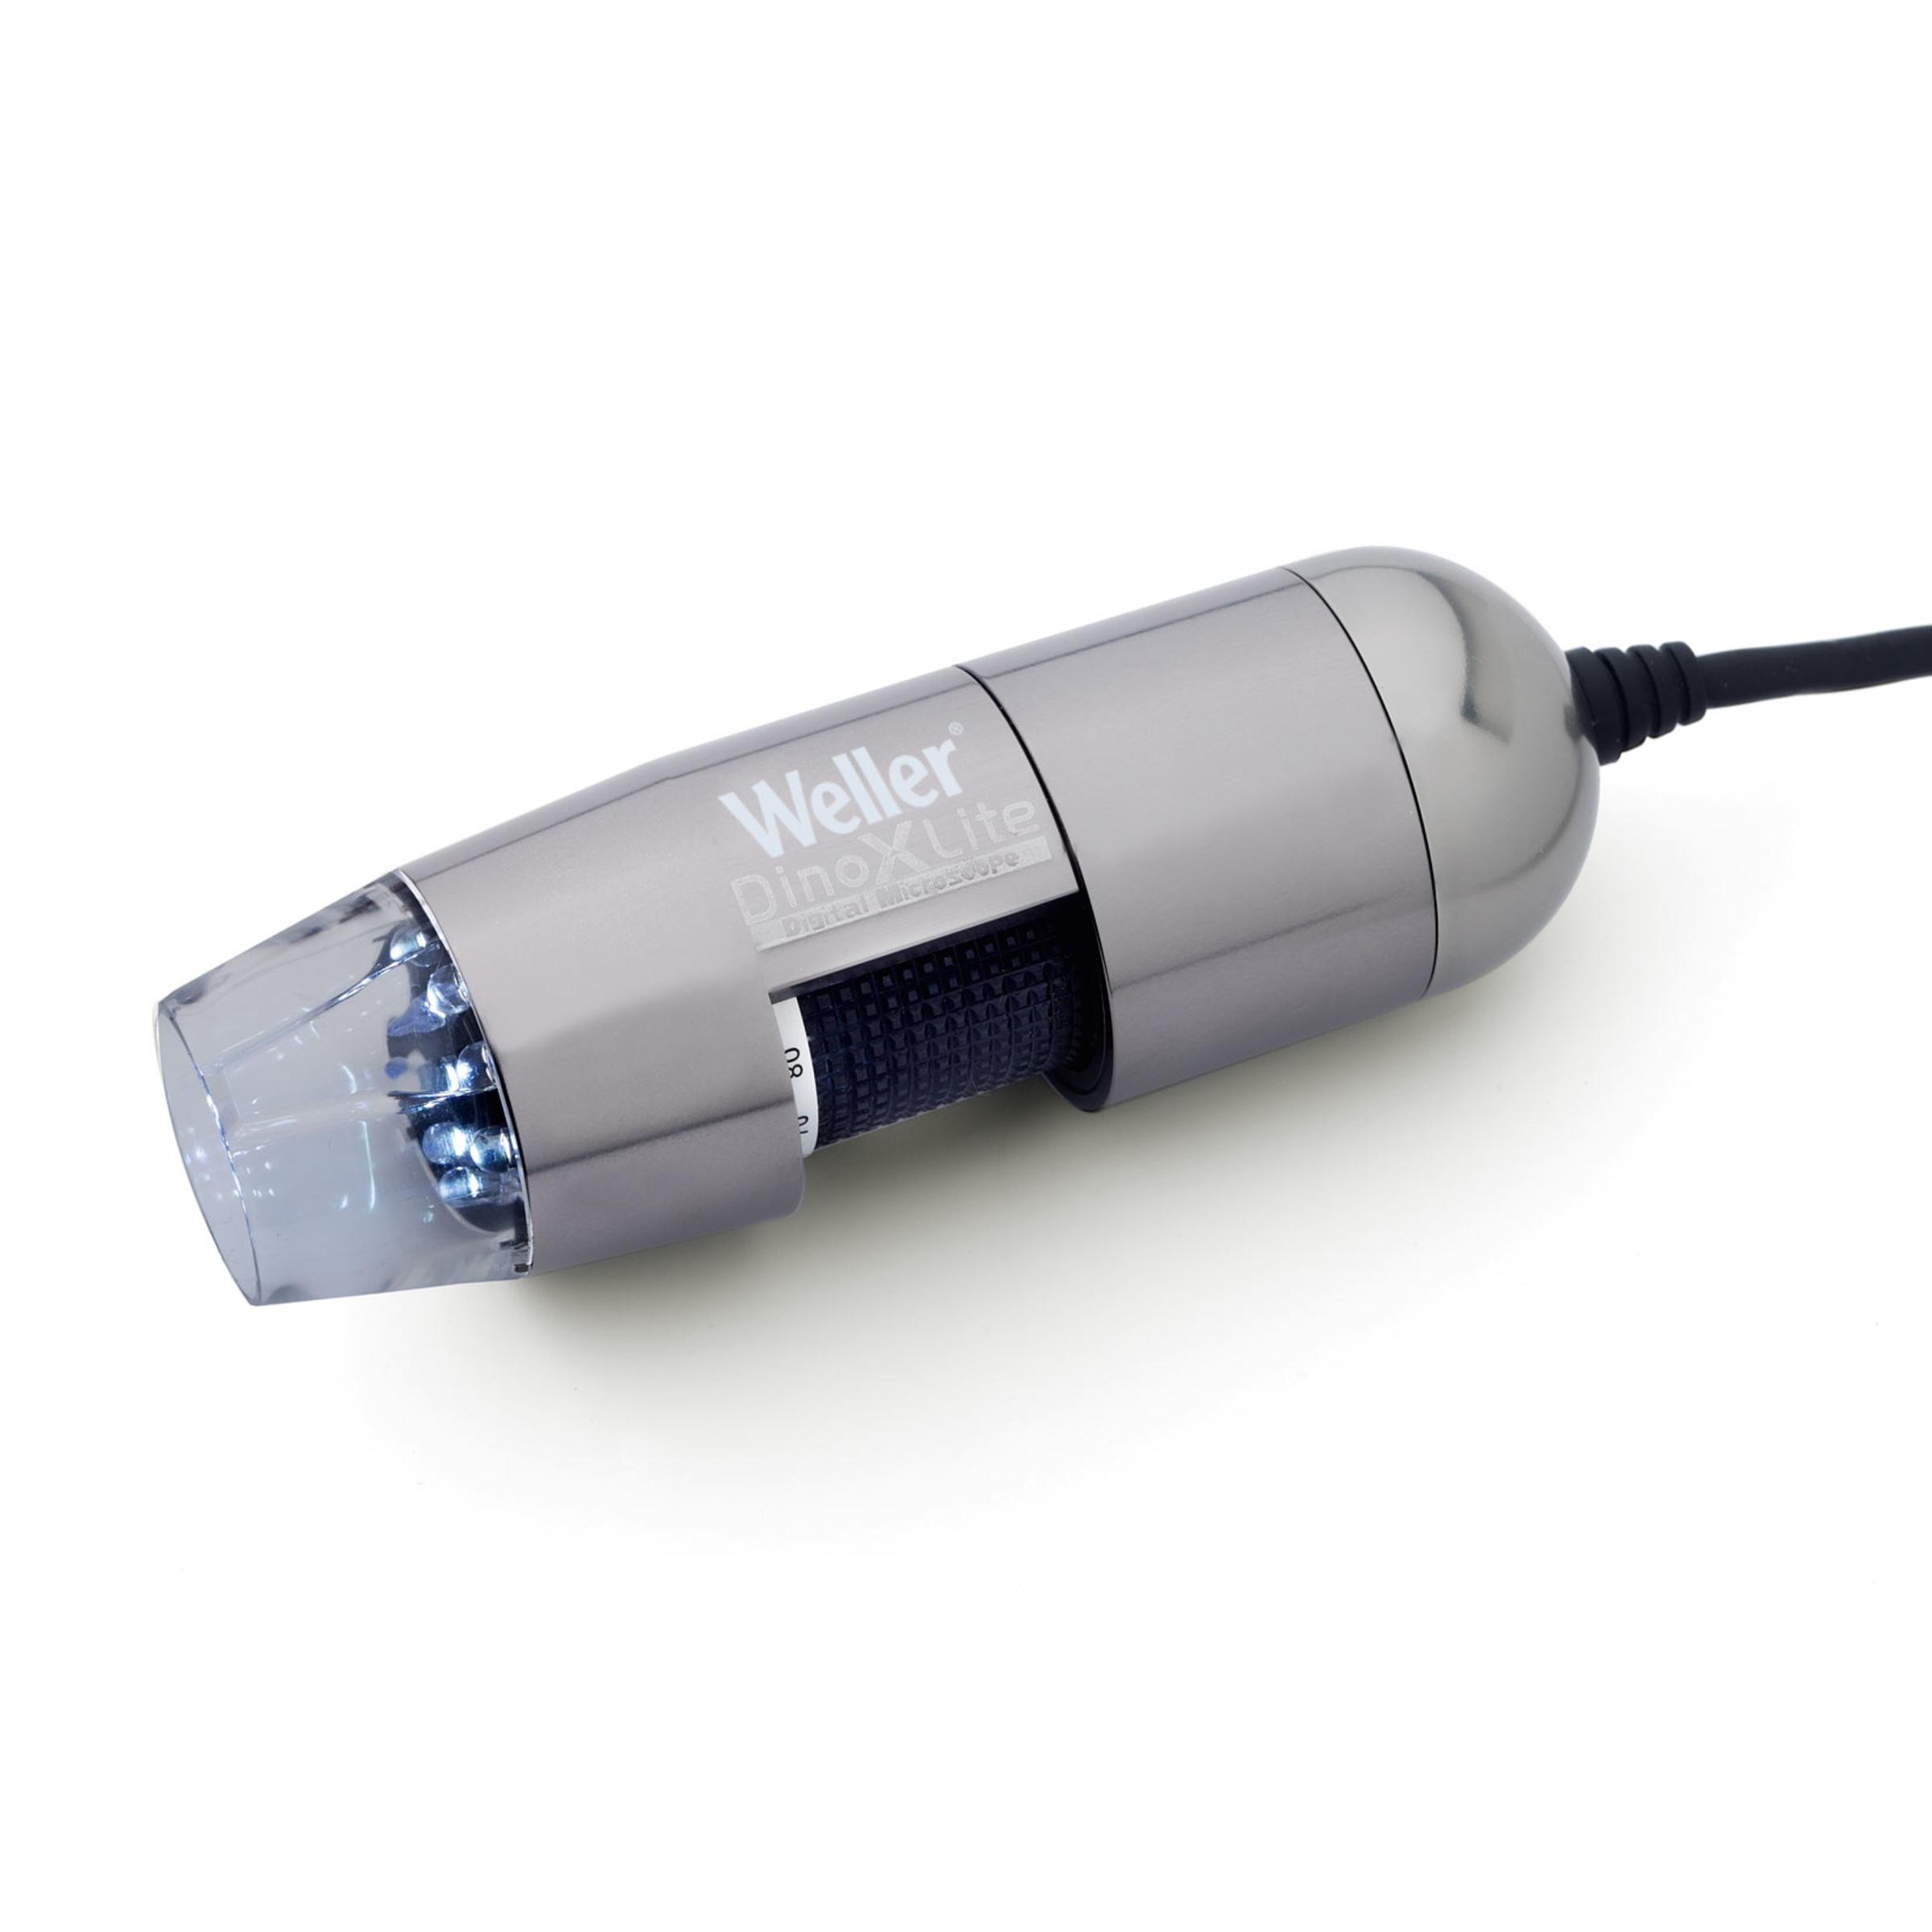 USB - микроскоп с поляризационным фильтром арт. 0051383899